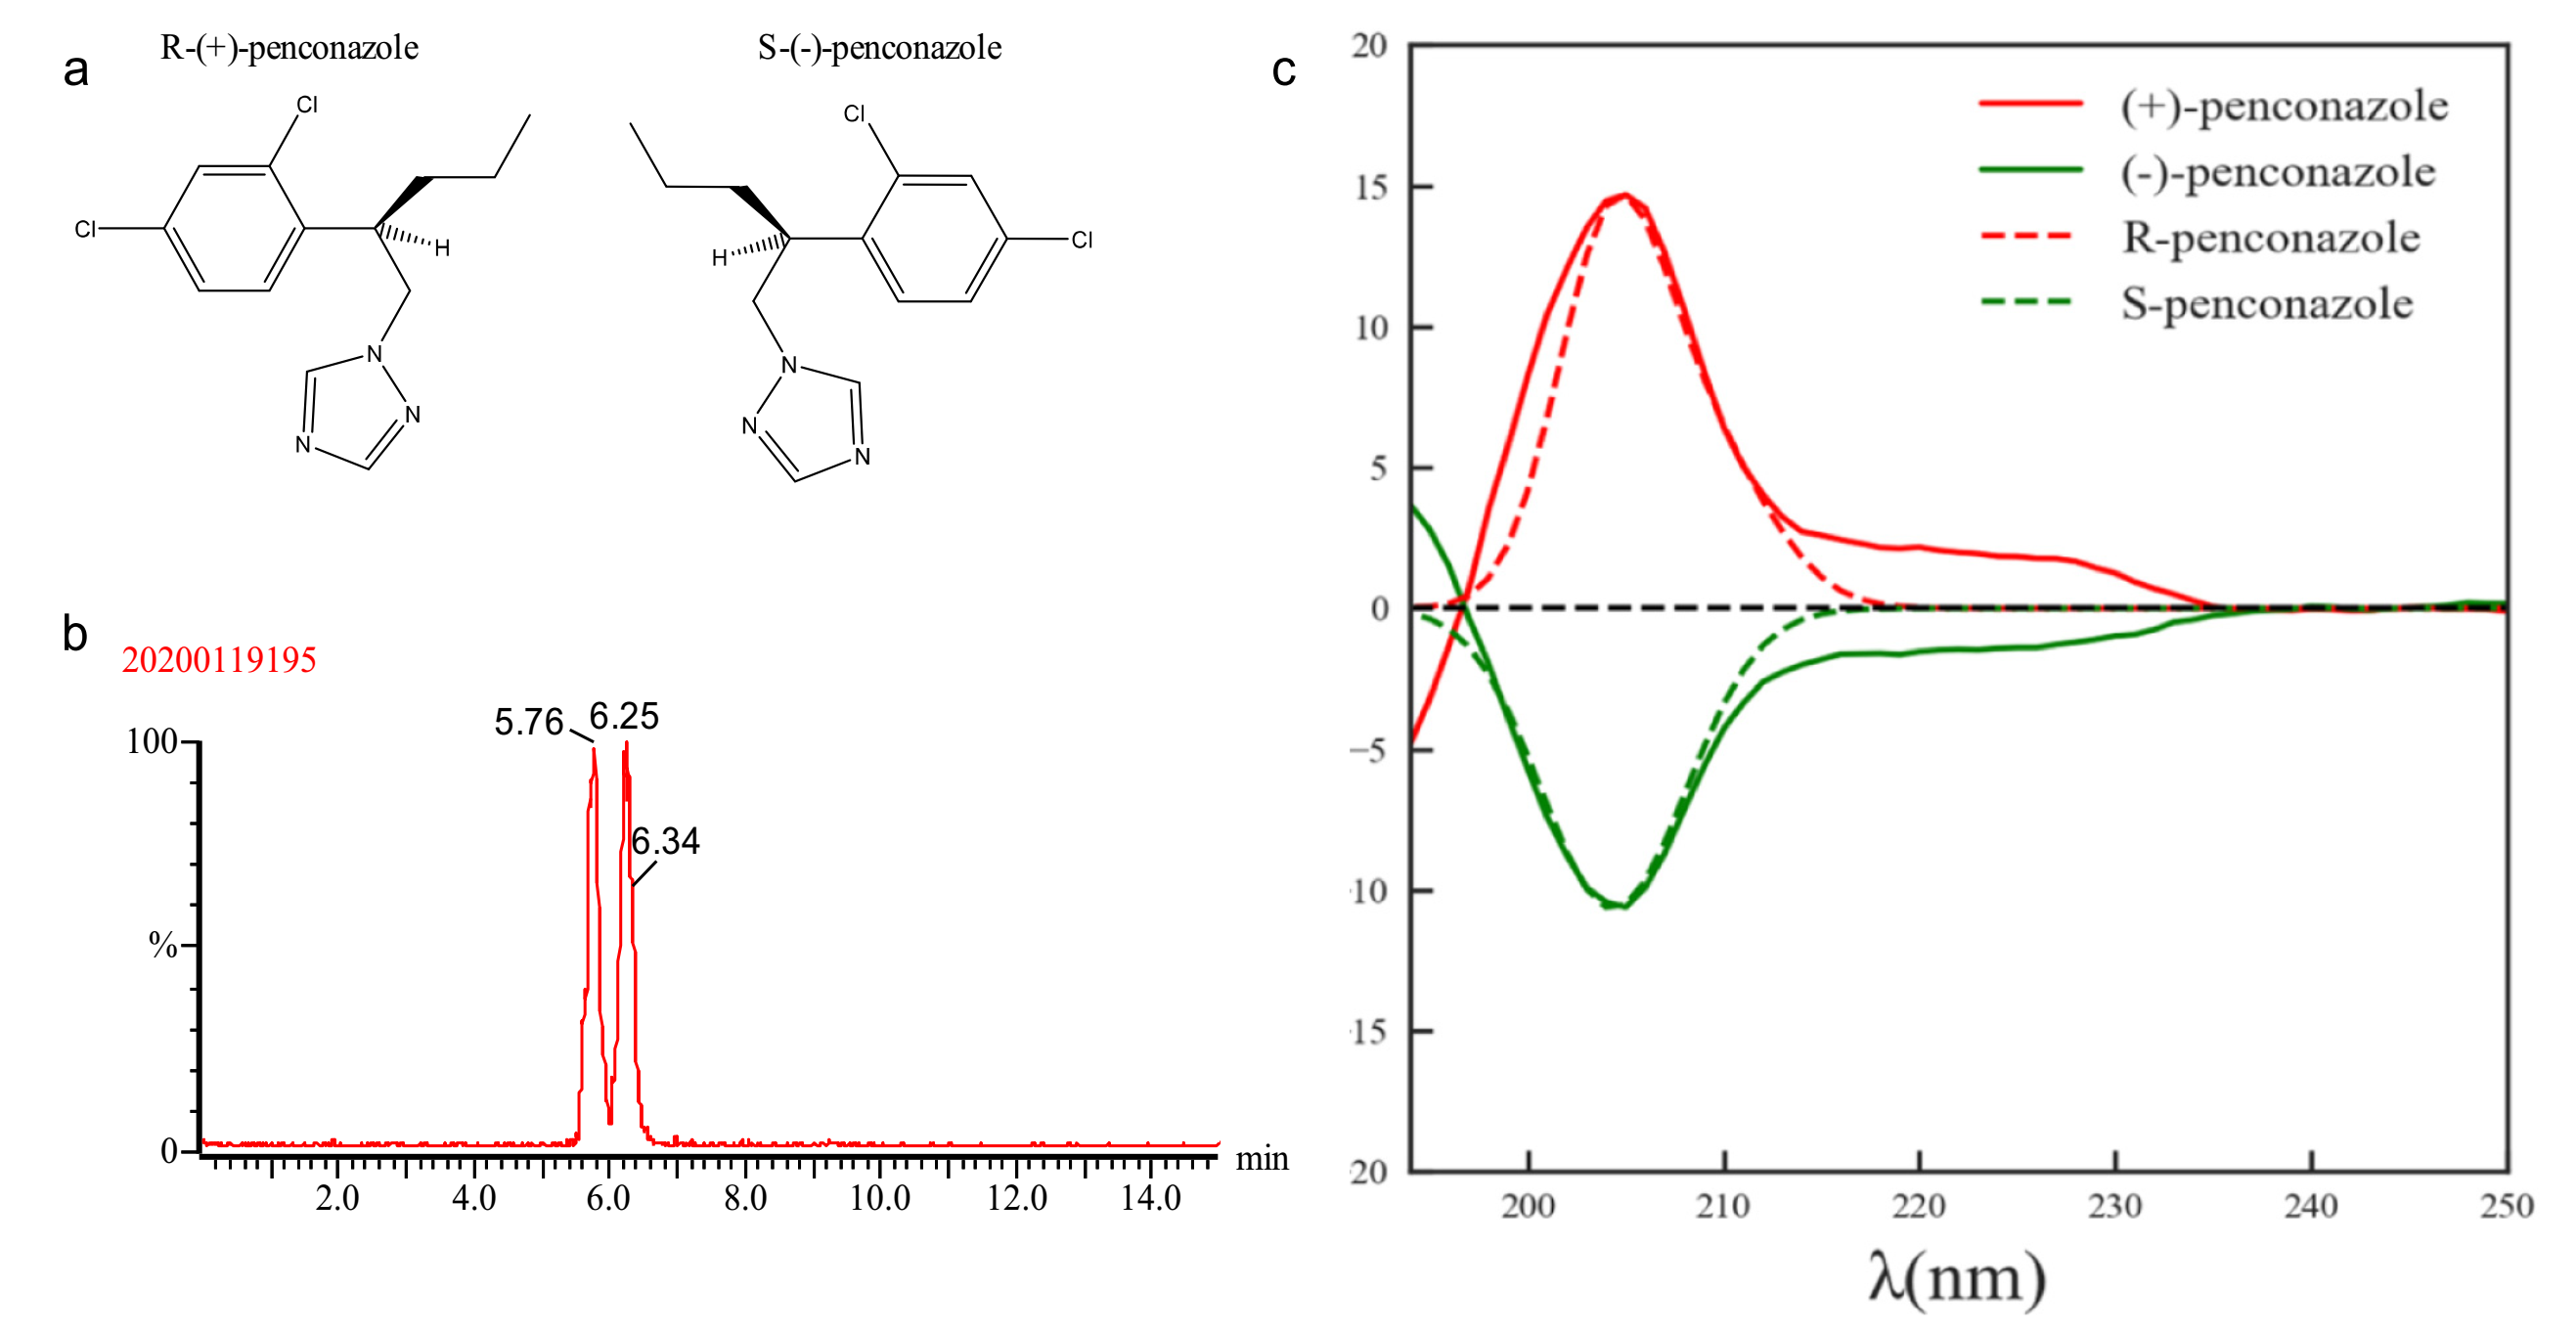 图1. a）烯康唑对映体结构。b）烯康唑对映体的NMR图谱。c）烯康唑及其对映体的计算图谱（实线）和实验图谱（虚线）比较。